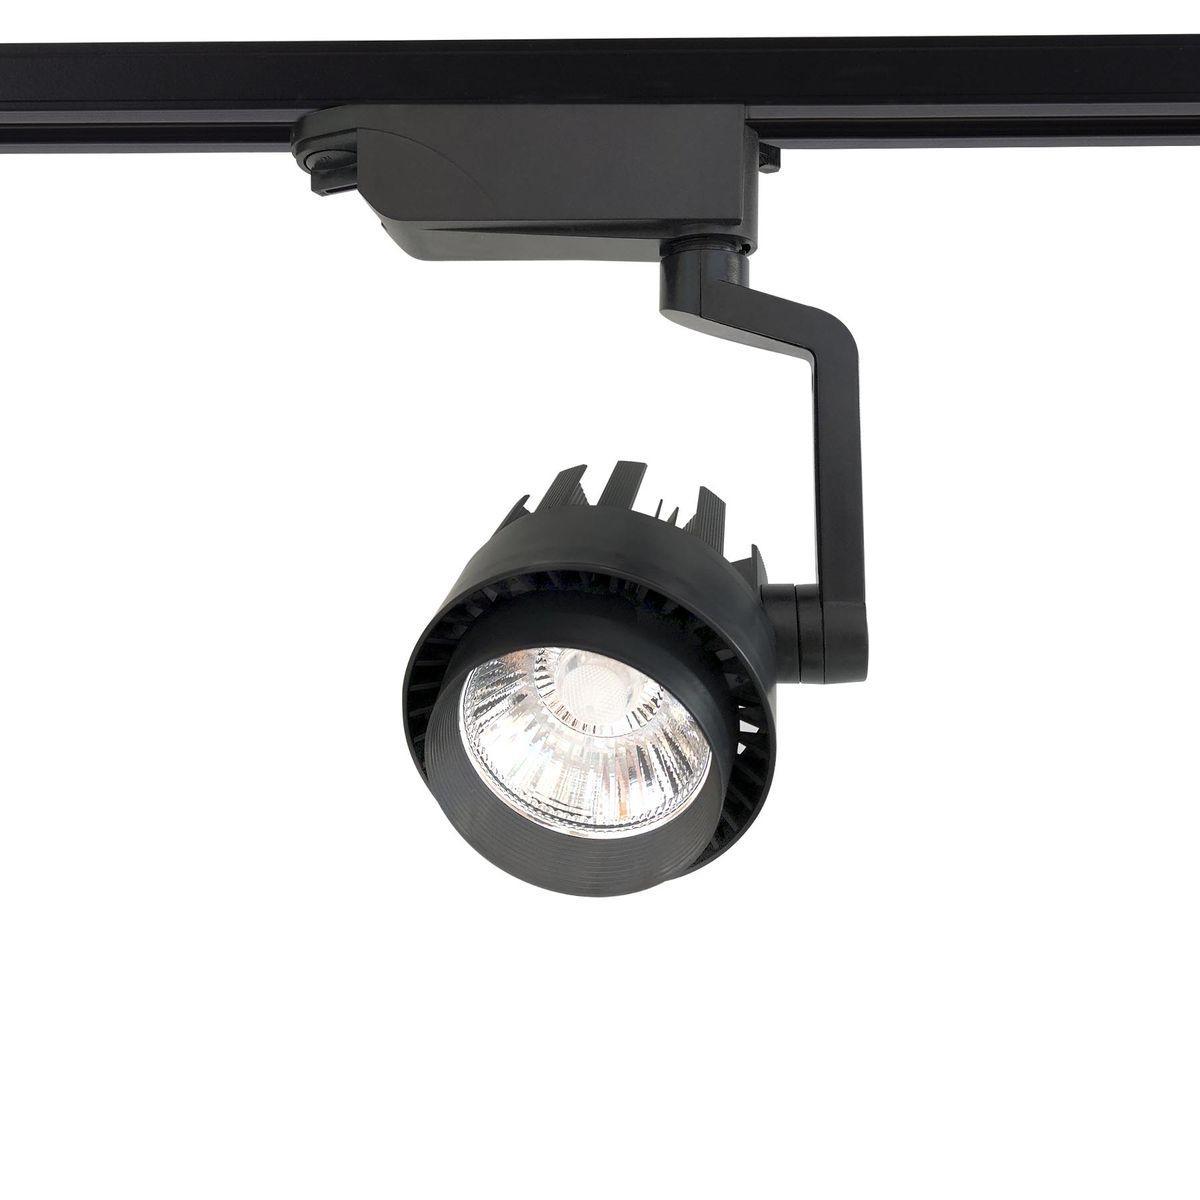 Трековый светодиодный светильник Ambrella light Track System GL6108 штырь подседельный system 1 26 4 x 350mm мтб или шоссе 290g серебр tcg 57101